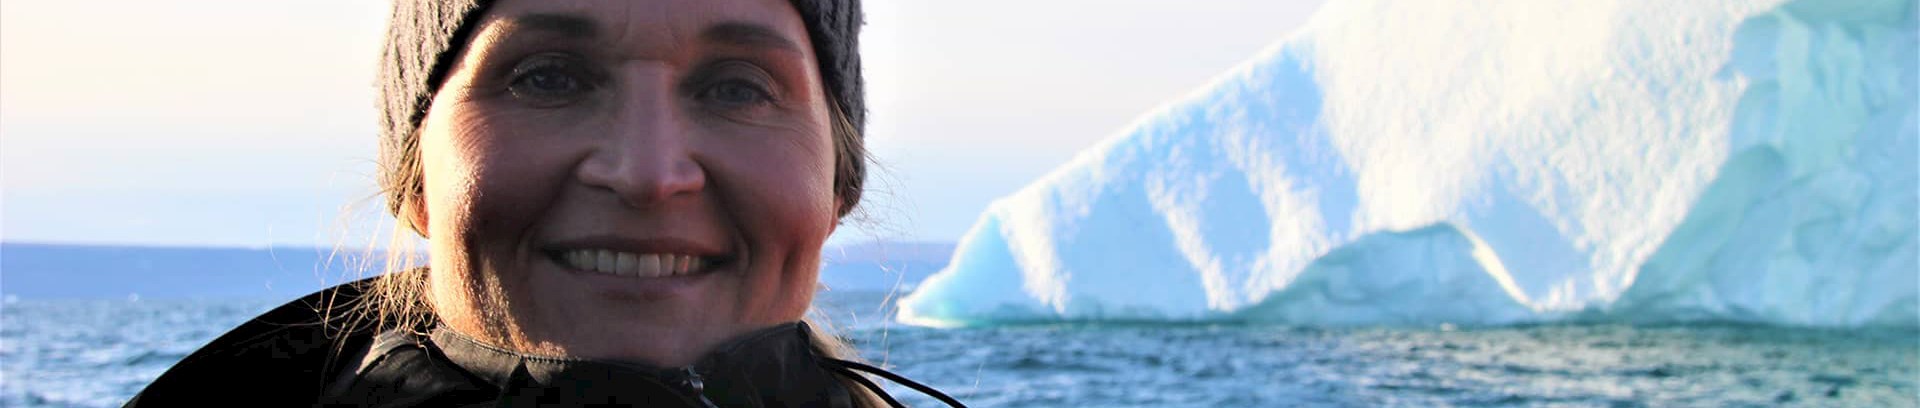 Camilla T.N. Sørensen er lektor ved Forsvarsakademiet med særligt fokus på Kina samt det arktiske område.